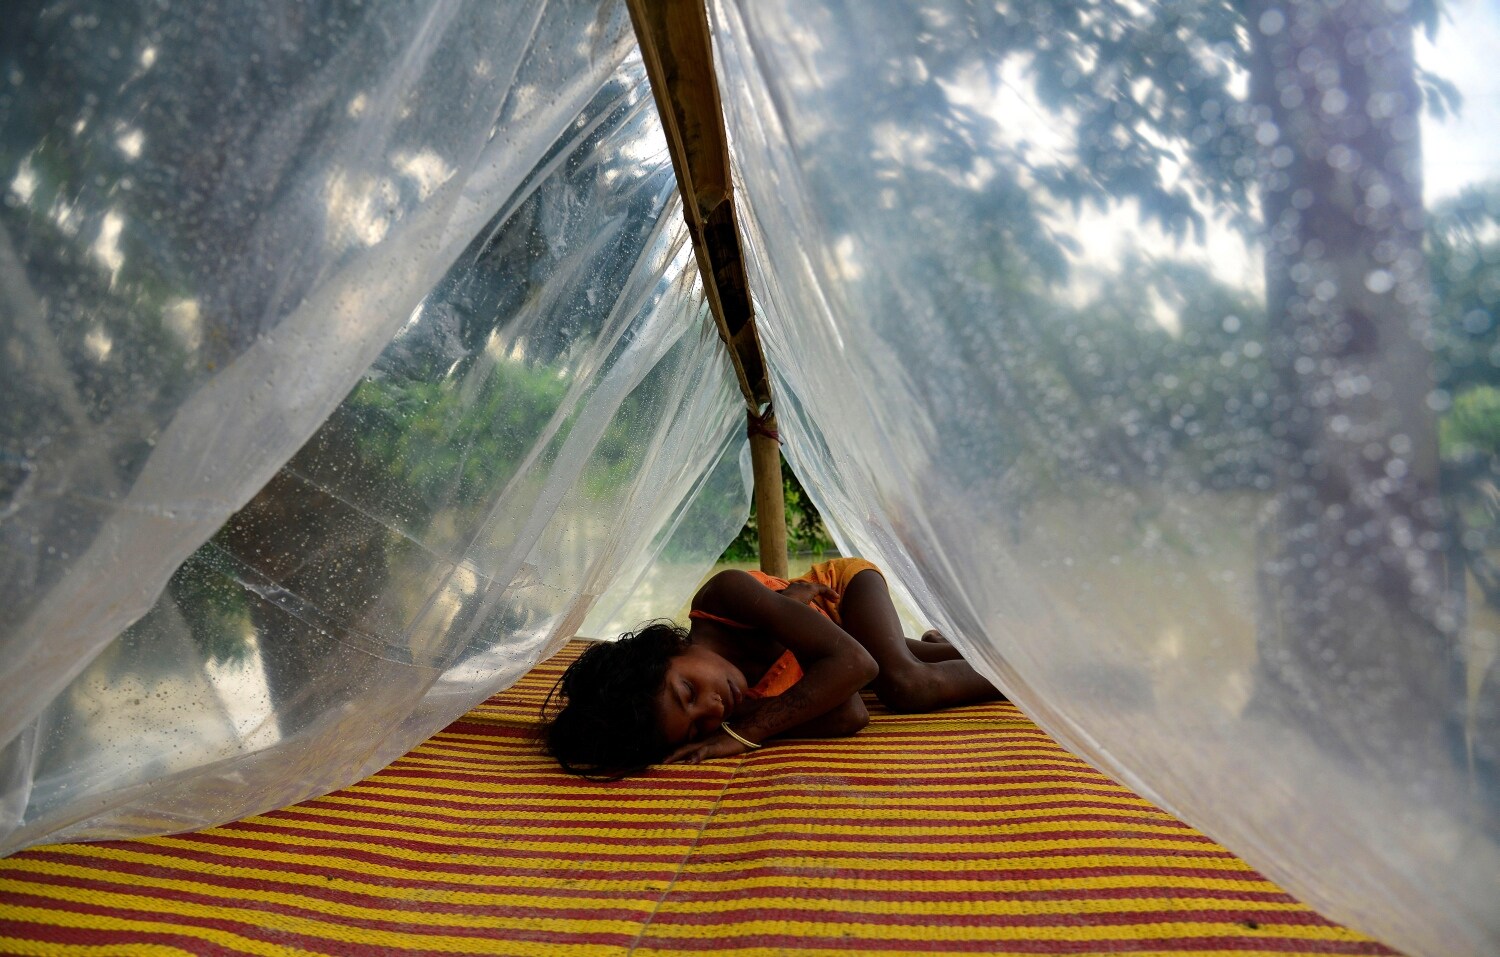 Una niña duerme en un campamento de ayuda en el distrito de Morigaon de Assam, India, afectado por la inundación. Según los informes de los medios, las inundaciones causadas por la lluvia del monzón han afectado a más de cuatrocientas mil personas en once distritos del estado de Assam.